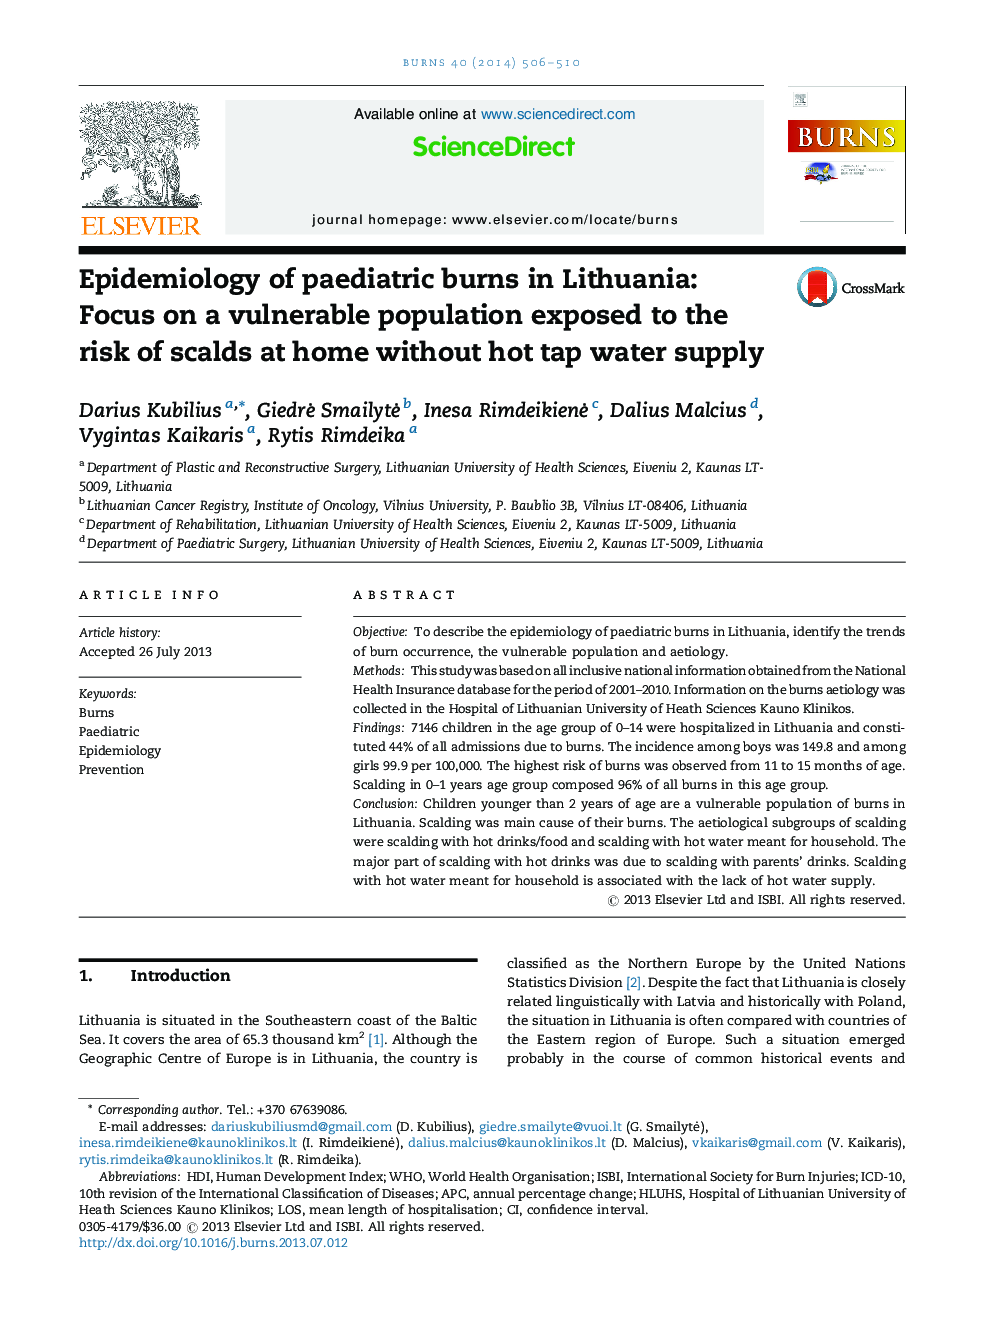 اپیدمیولوژی سوختگی کودکان در لیتوانی: تمرکز بر یک جمعیت آسیب پذیر در معرض خطر پاشیدن در خانه بدون استفاده از آب گرم 